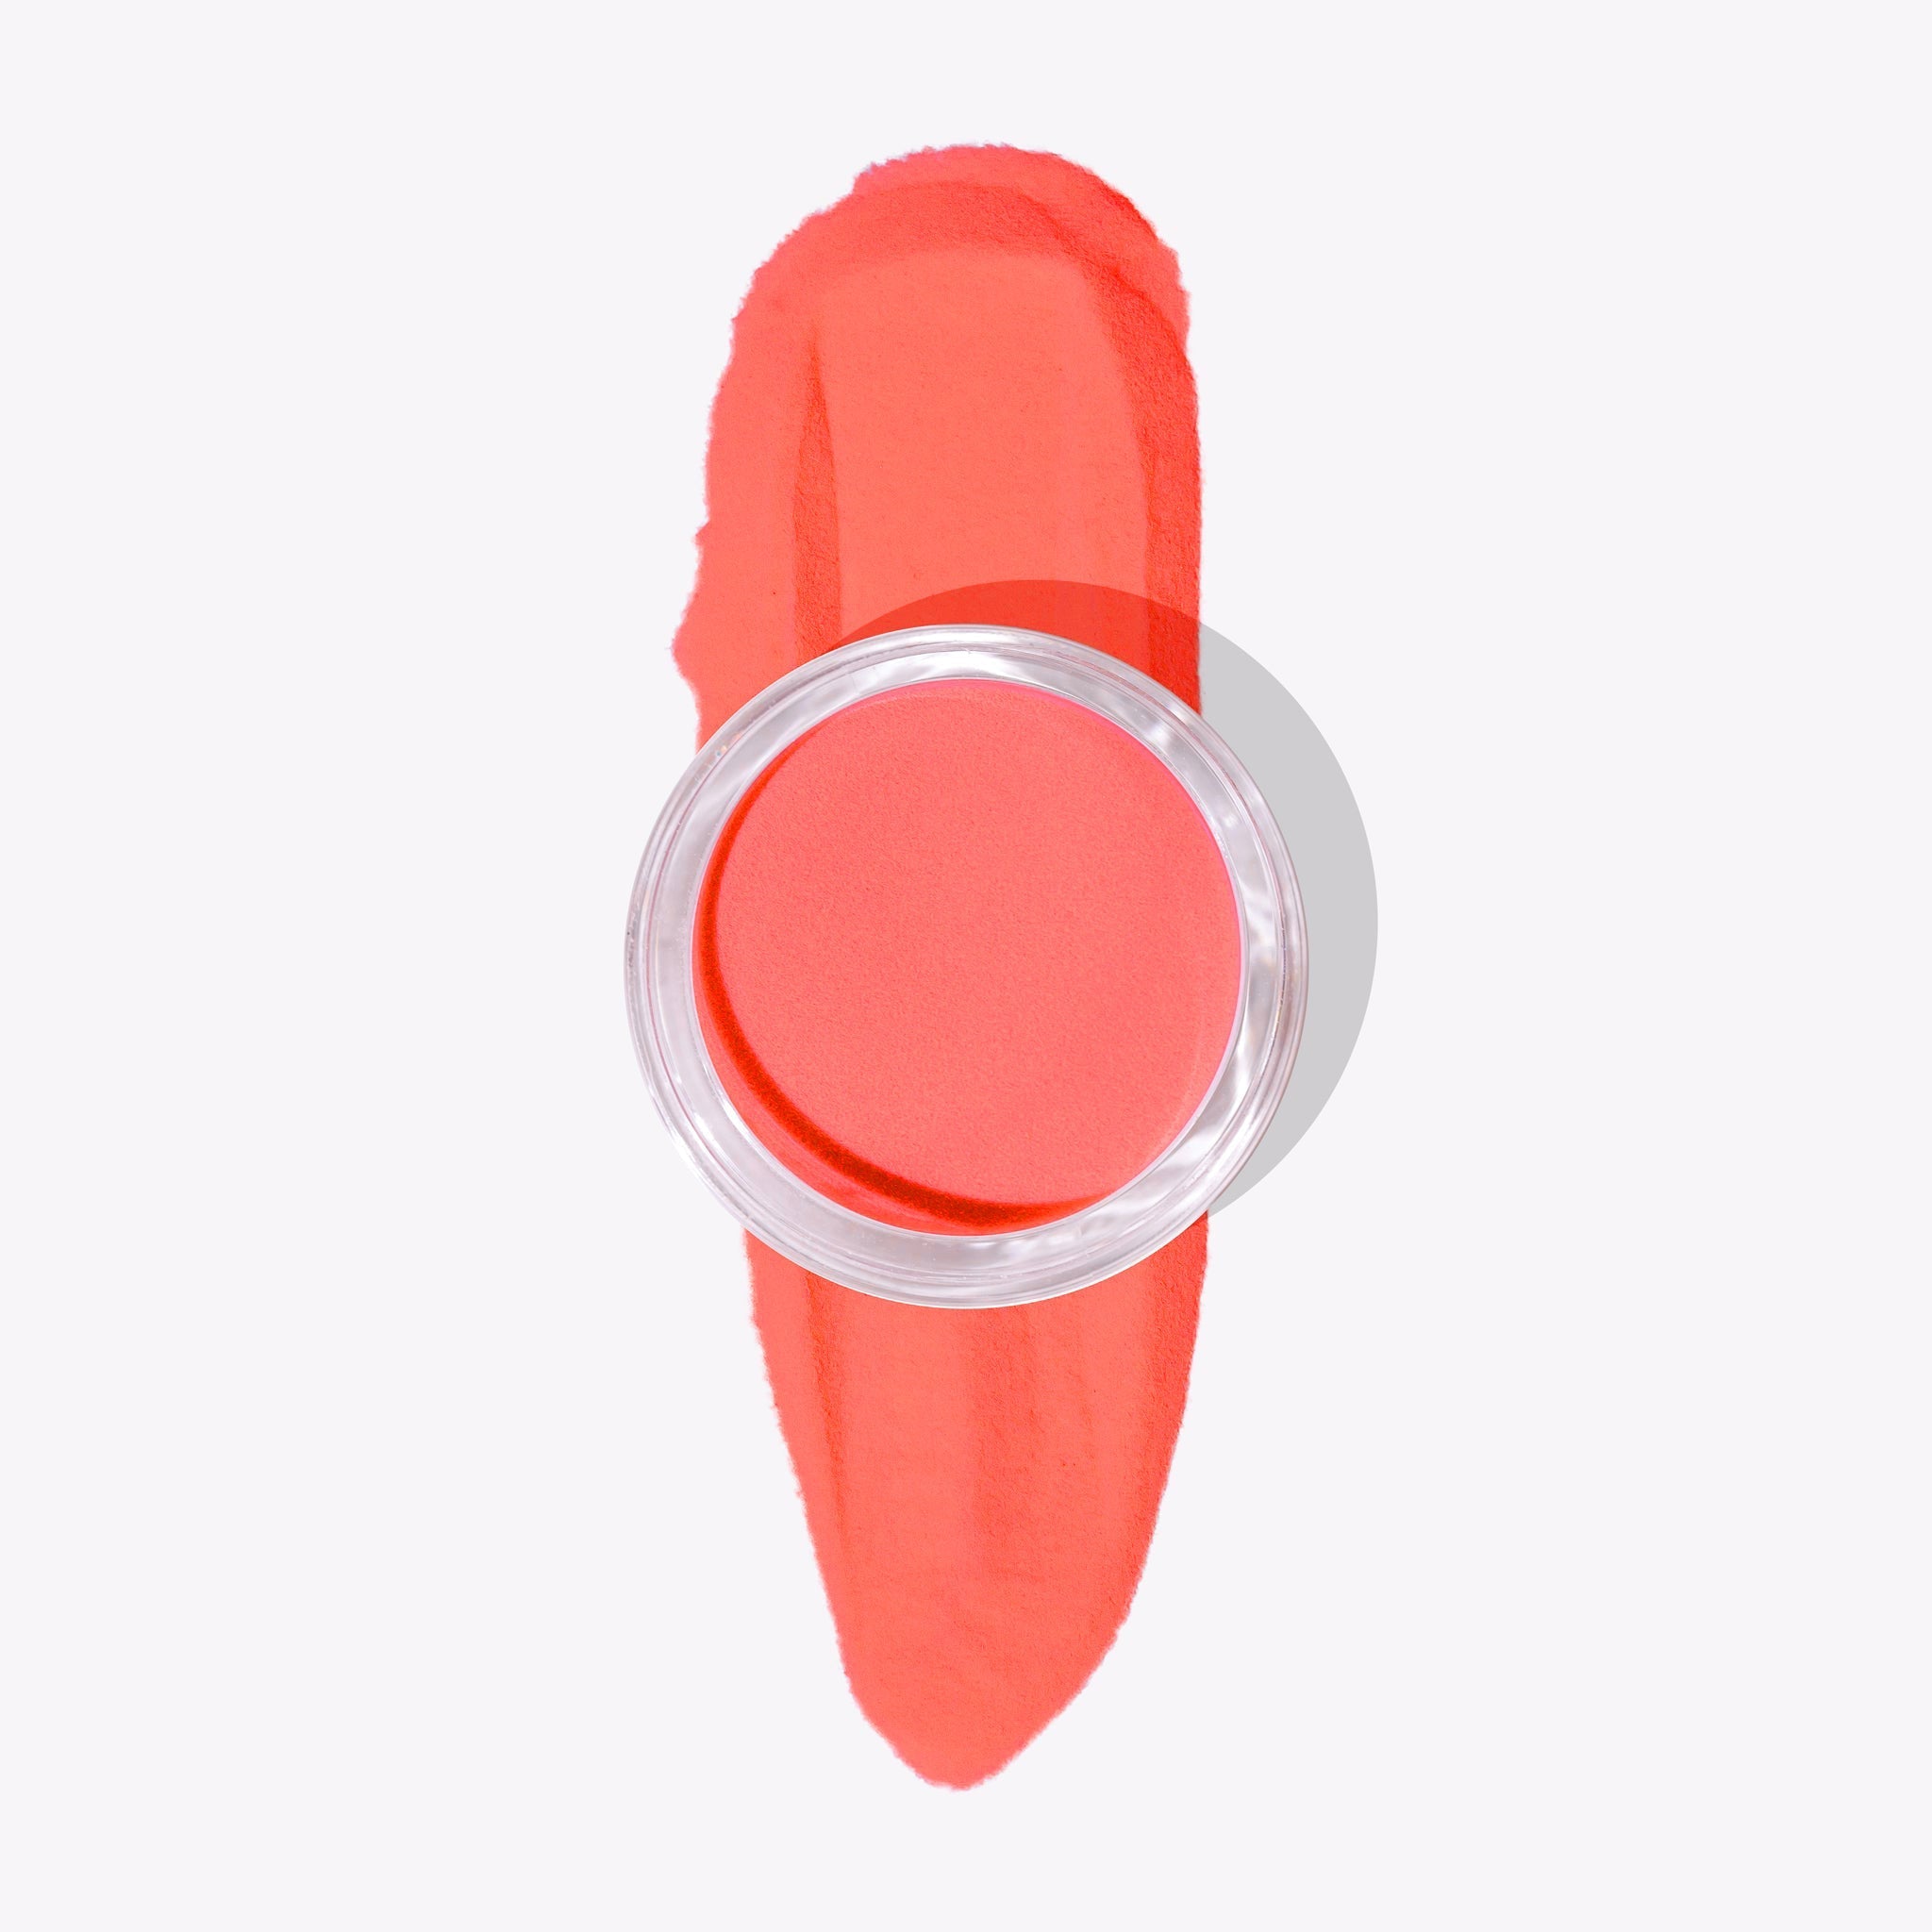 Over It neon orange nagellack för nageltrender 2024. Perfekt för hållbara naglar hemma och nagelkit, en sommarfavorit